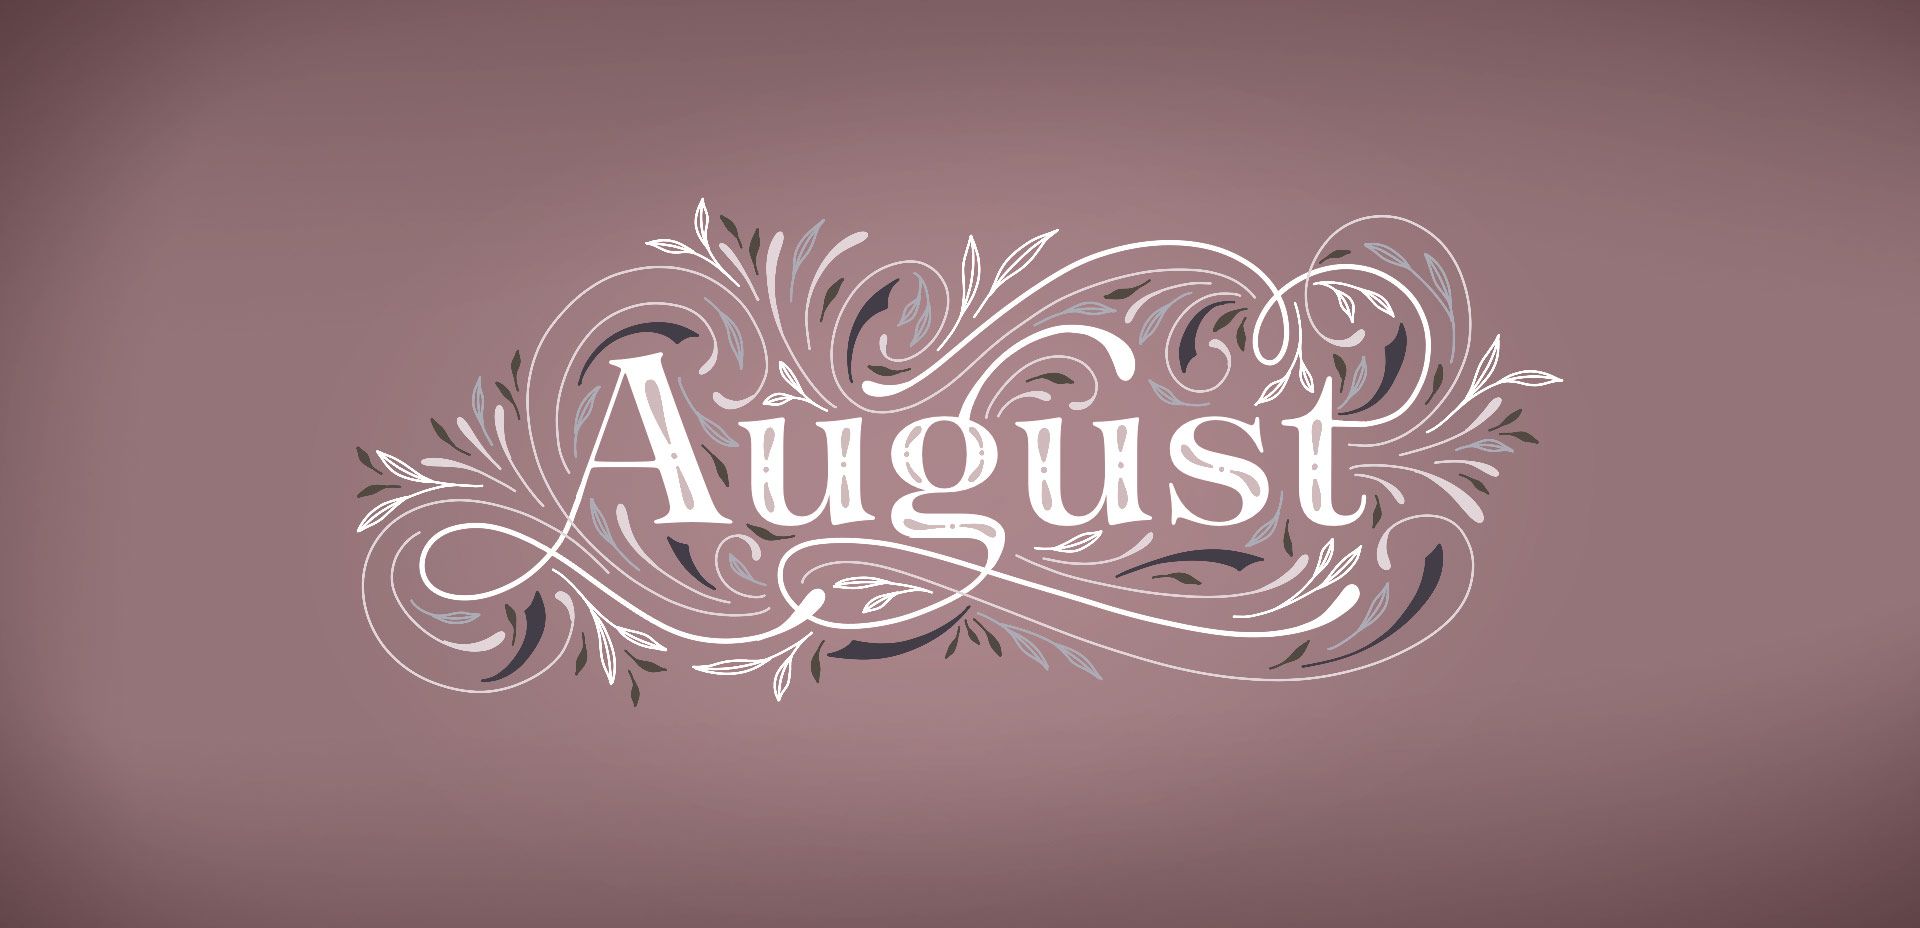 Freebie: August 2019 Desktop Wallpaper